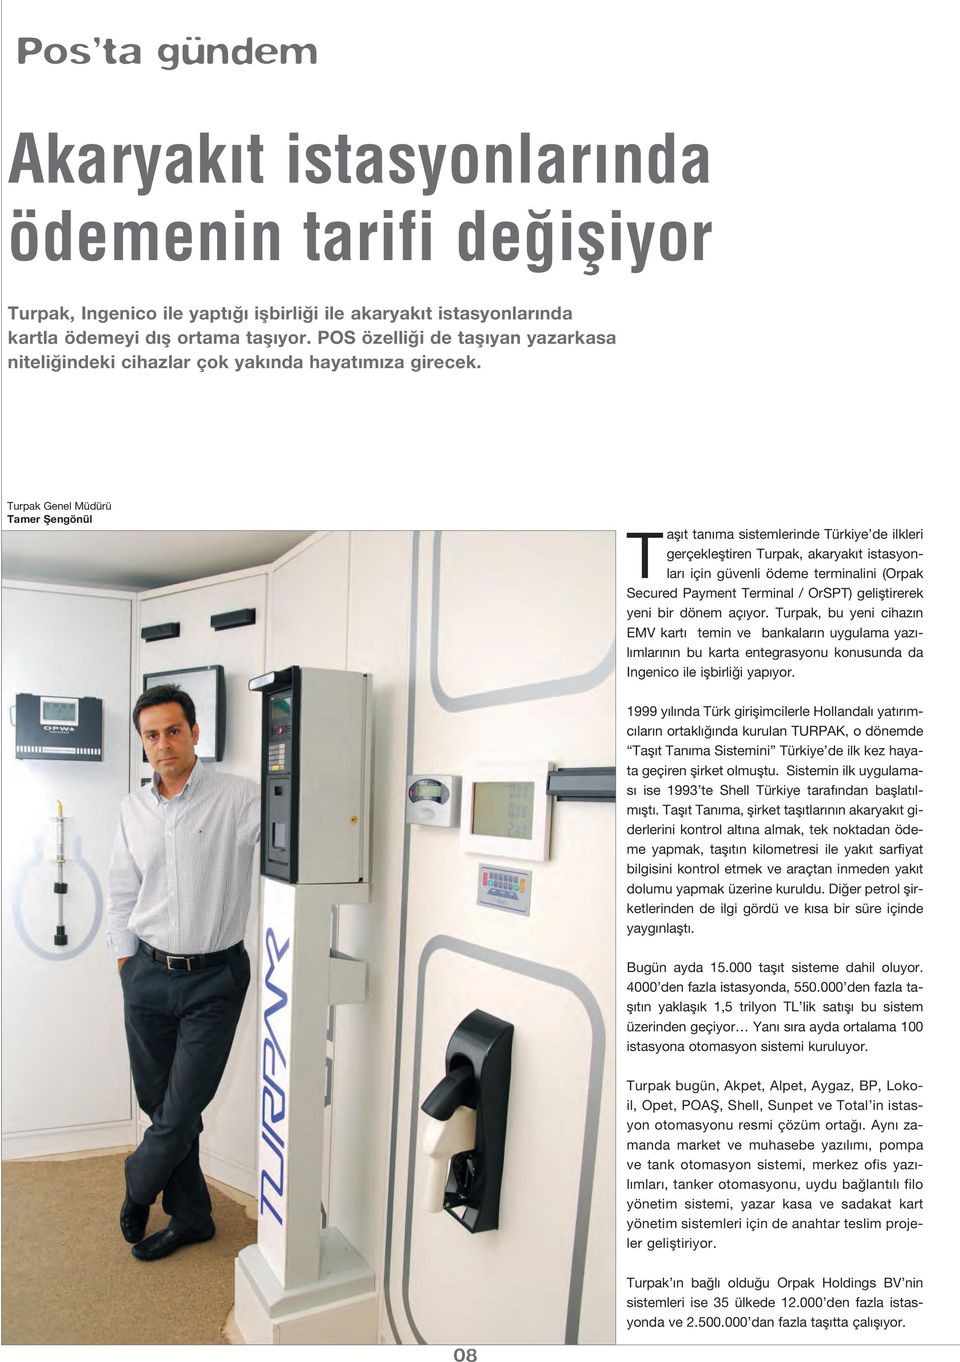 Turpak Genel Müdürü Tamer fiengönül Tafl t tan ma sistemlerinde Türkiye de ilkleri gerçeklefltiren Turpak, akaryak t istasyonlar için güvenli ödeme terminalini (Orpak Secured Payment Terminal /